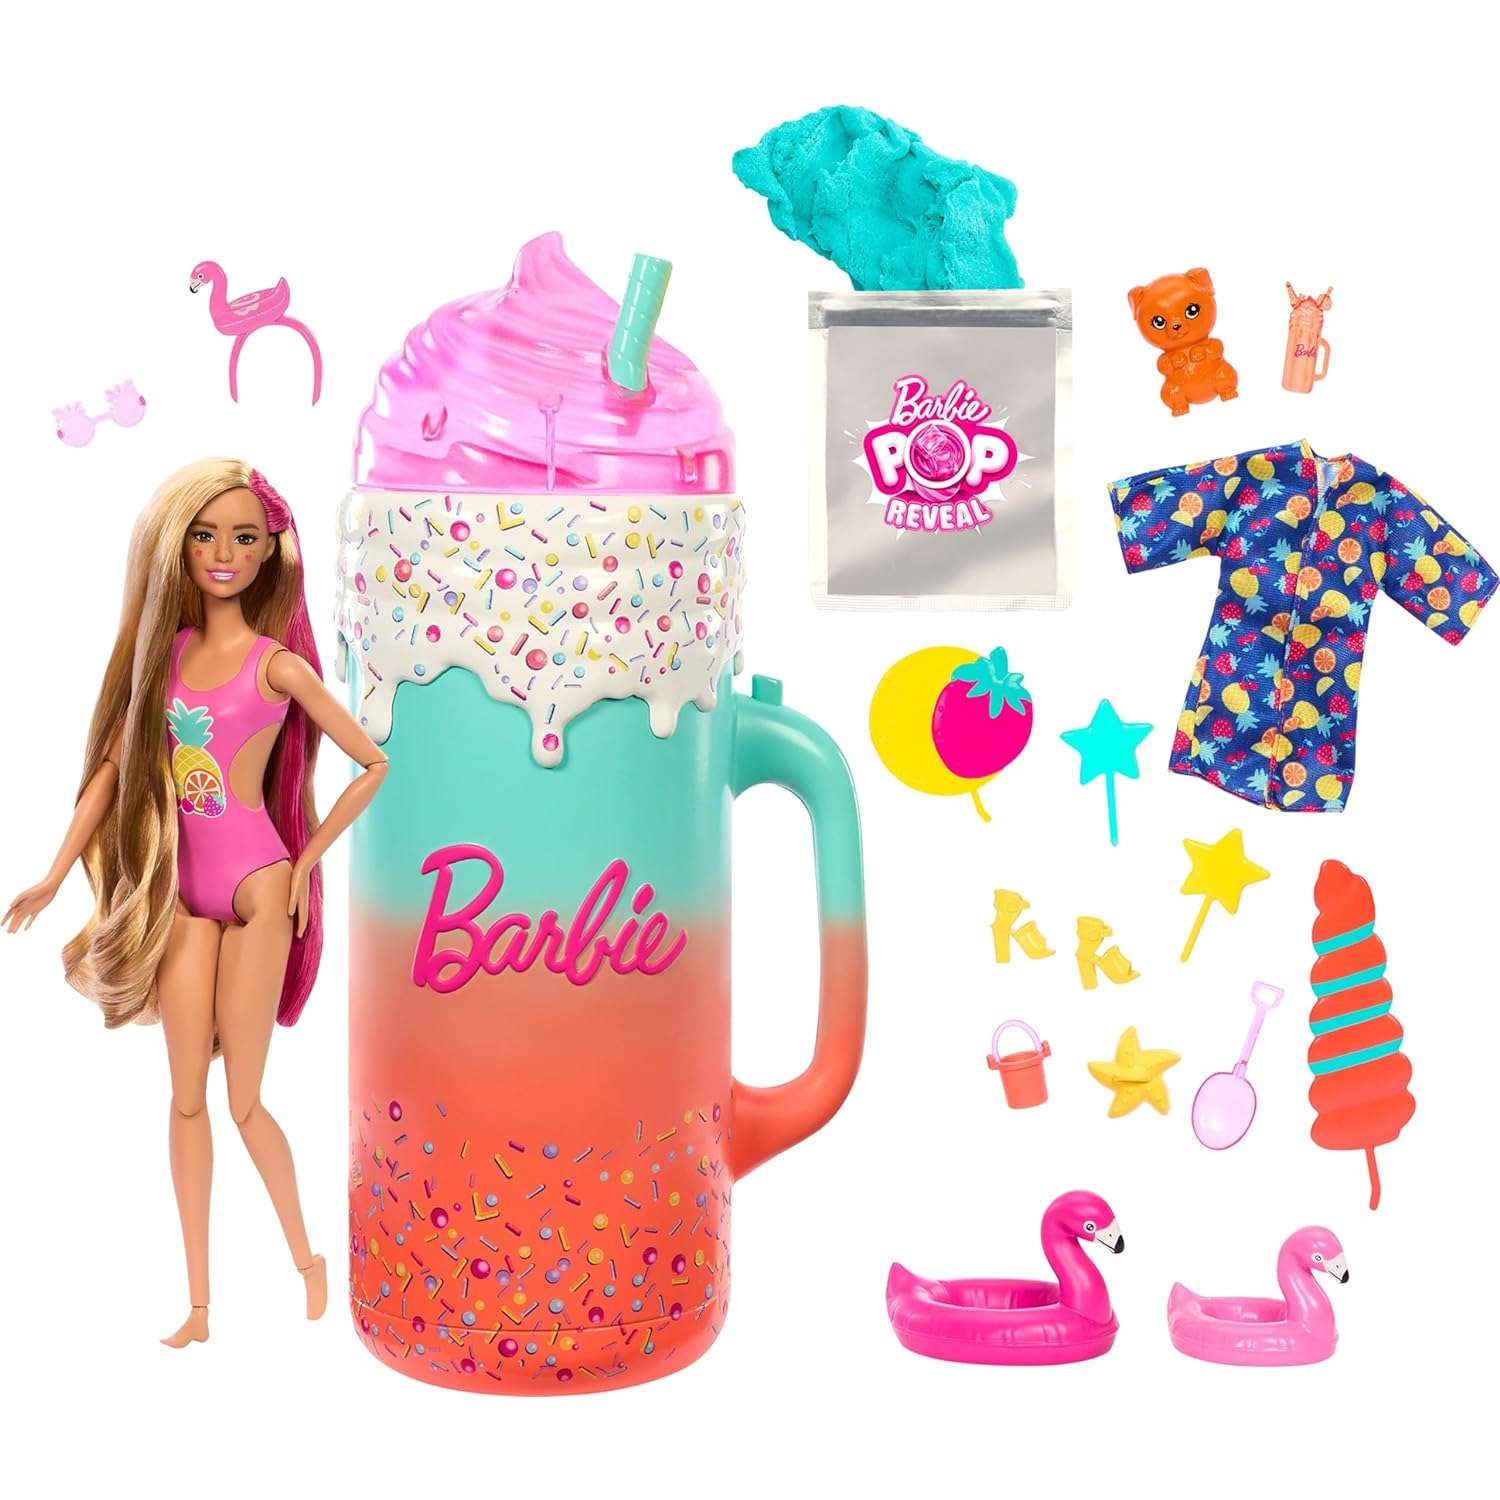 Кукла Barbie PopReveal подарочный набор HRK57 HRK57 - фото 3